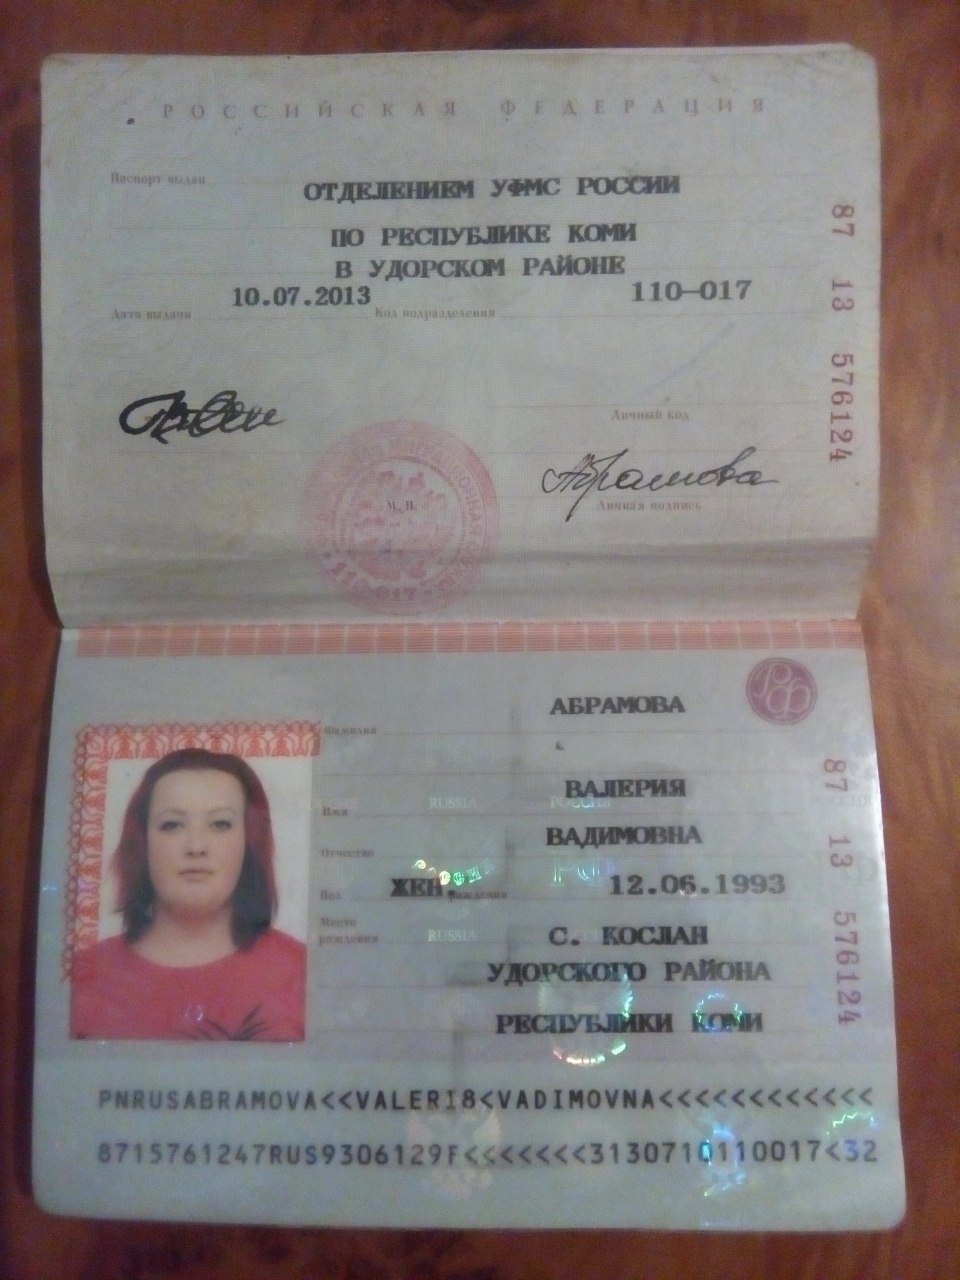 Фото паспорта 18 лет без фото лица